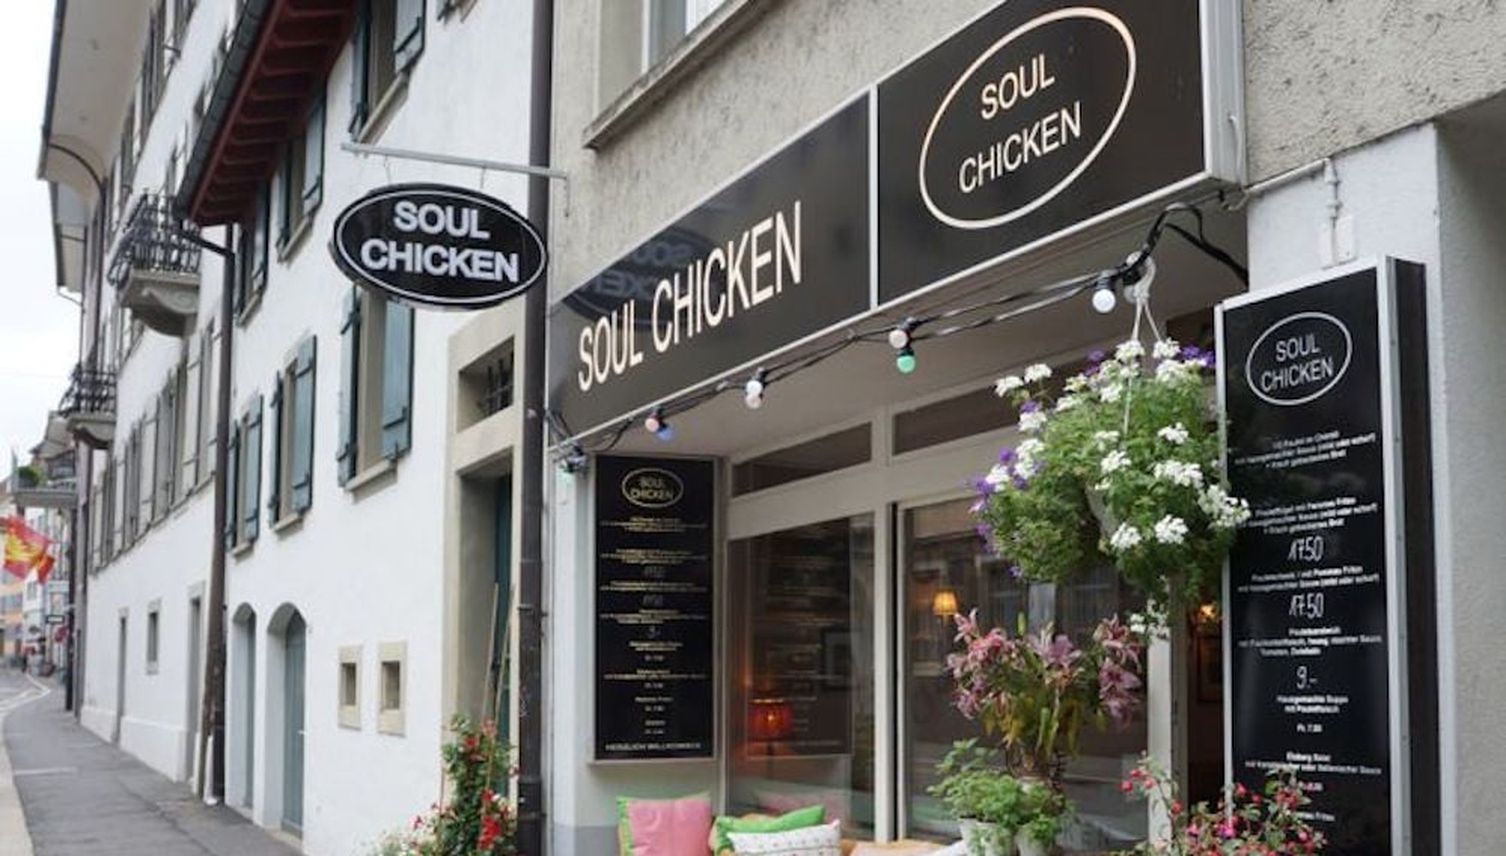 Soul Chicken – Da kräht der Hahn